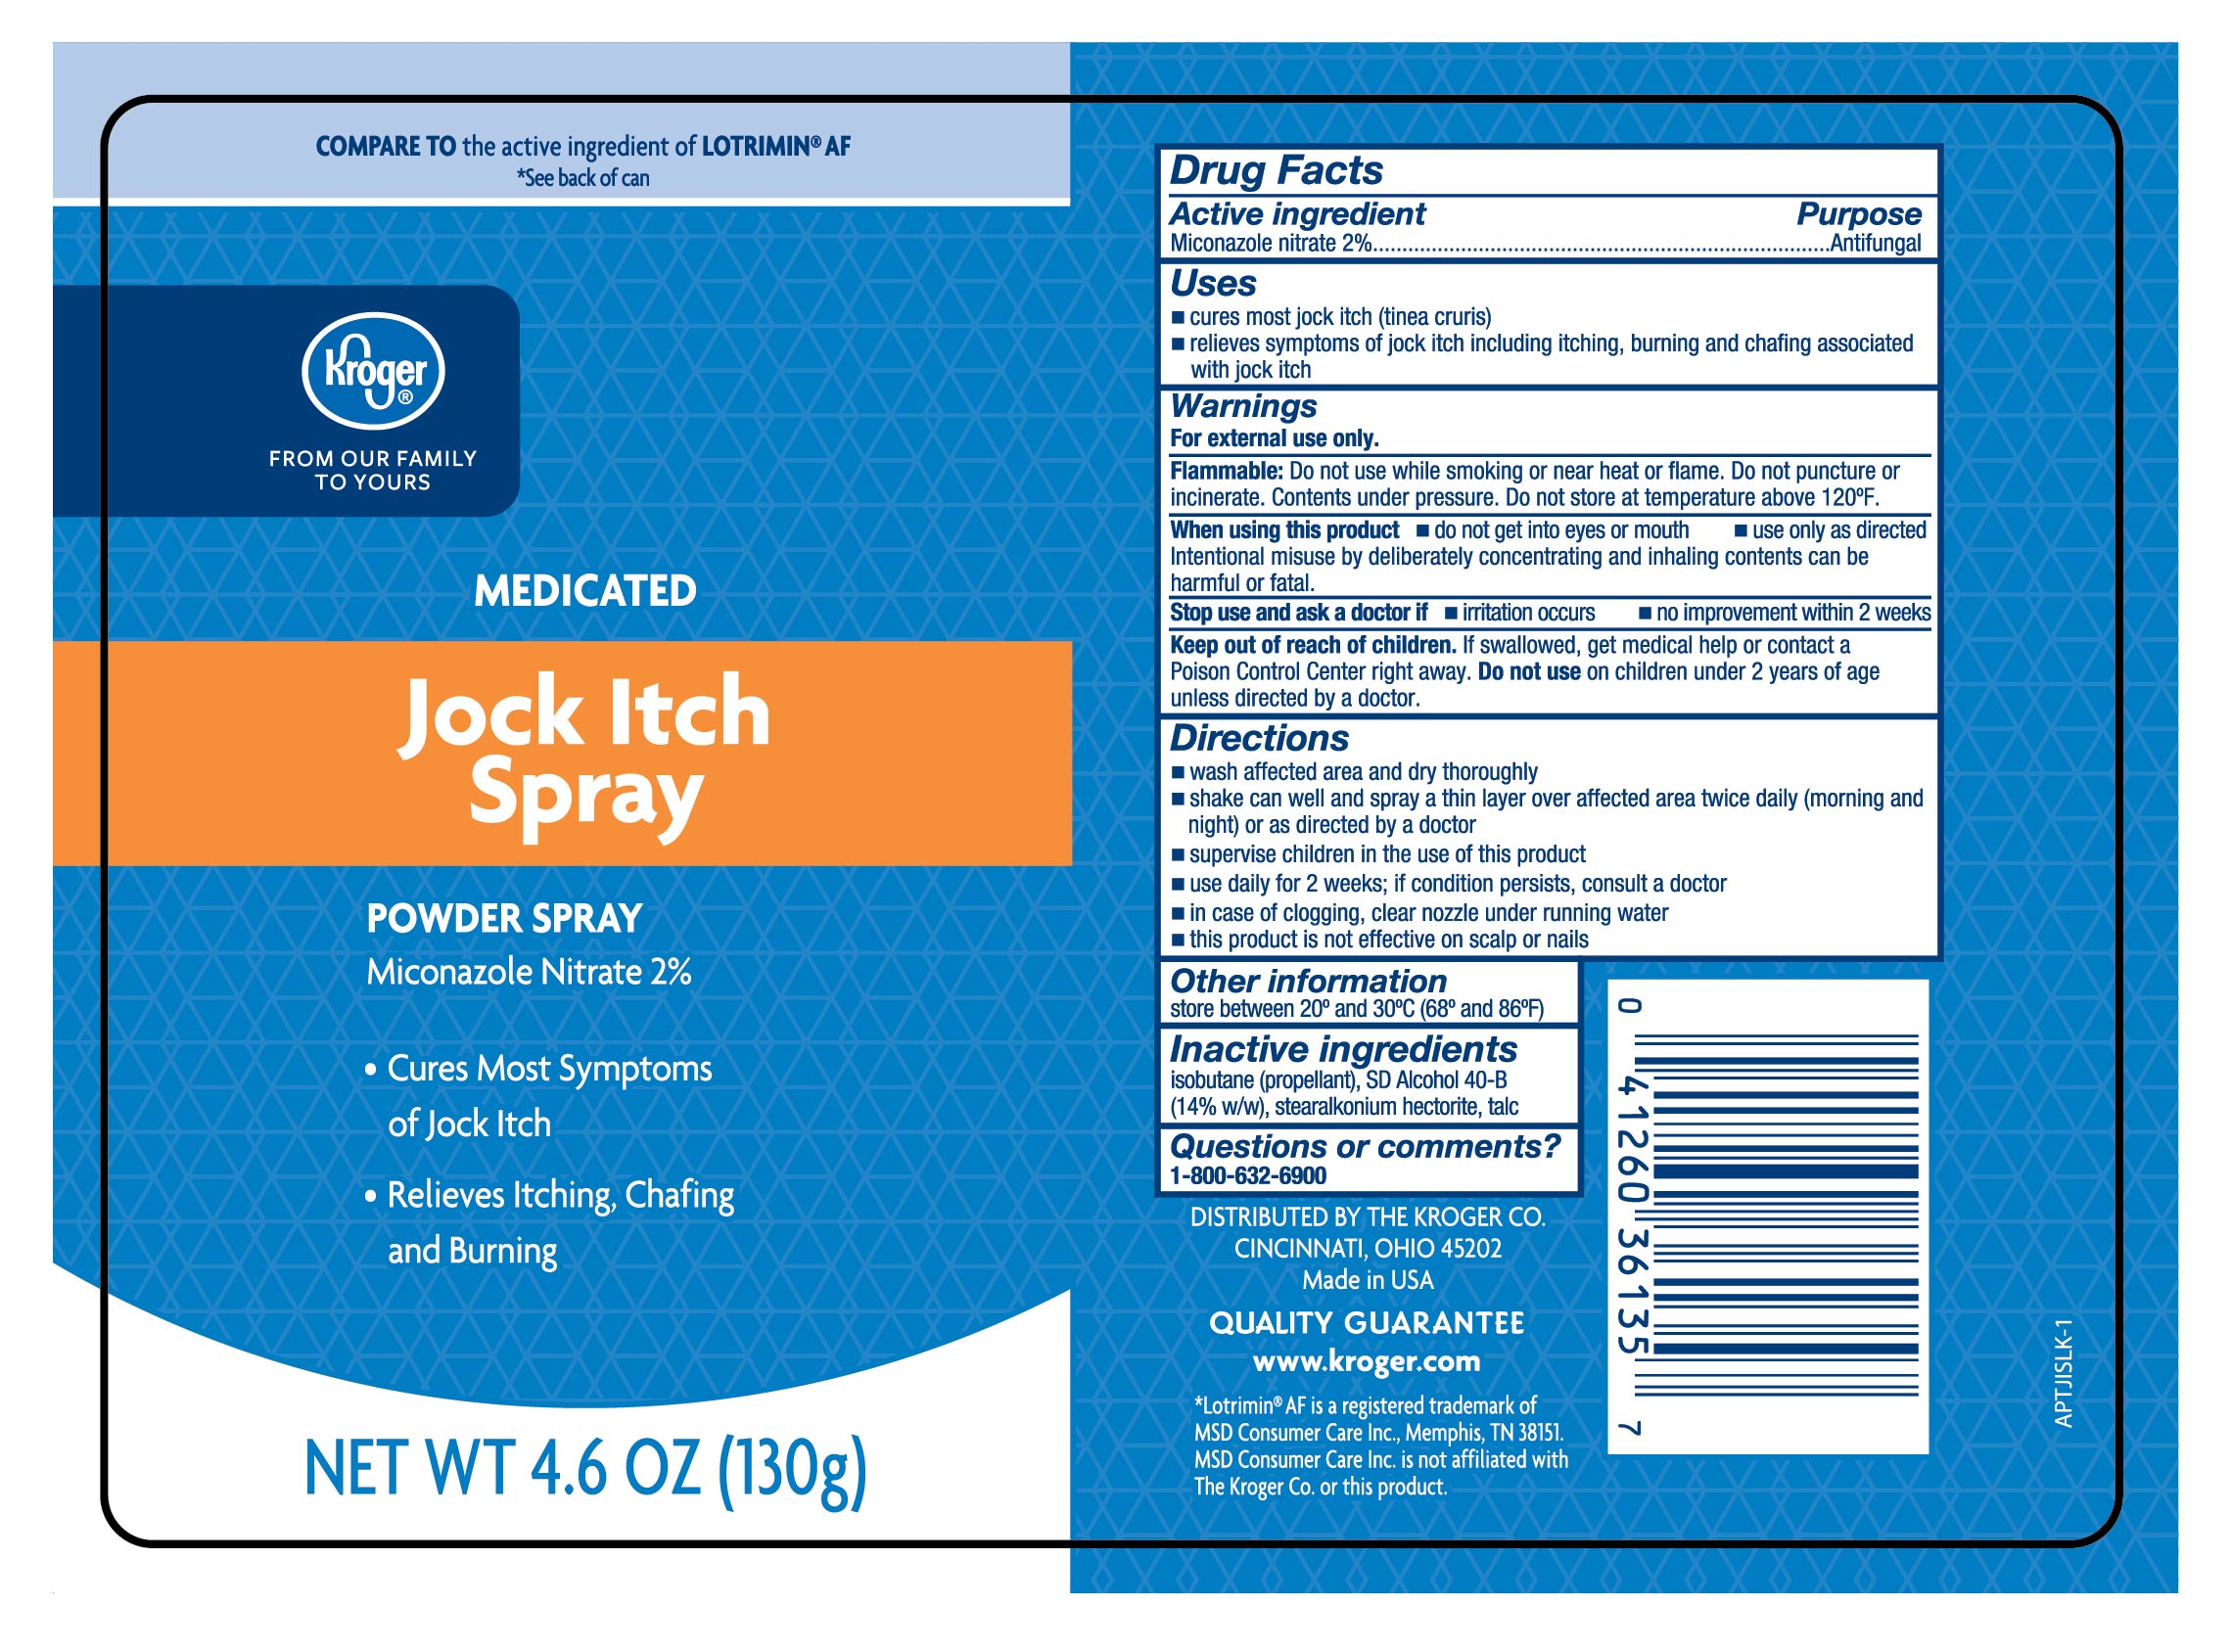 KROGER Antifungal Miconazole Powder Jock Itch Spray